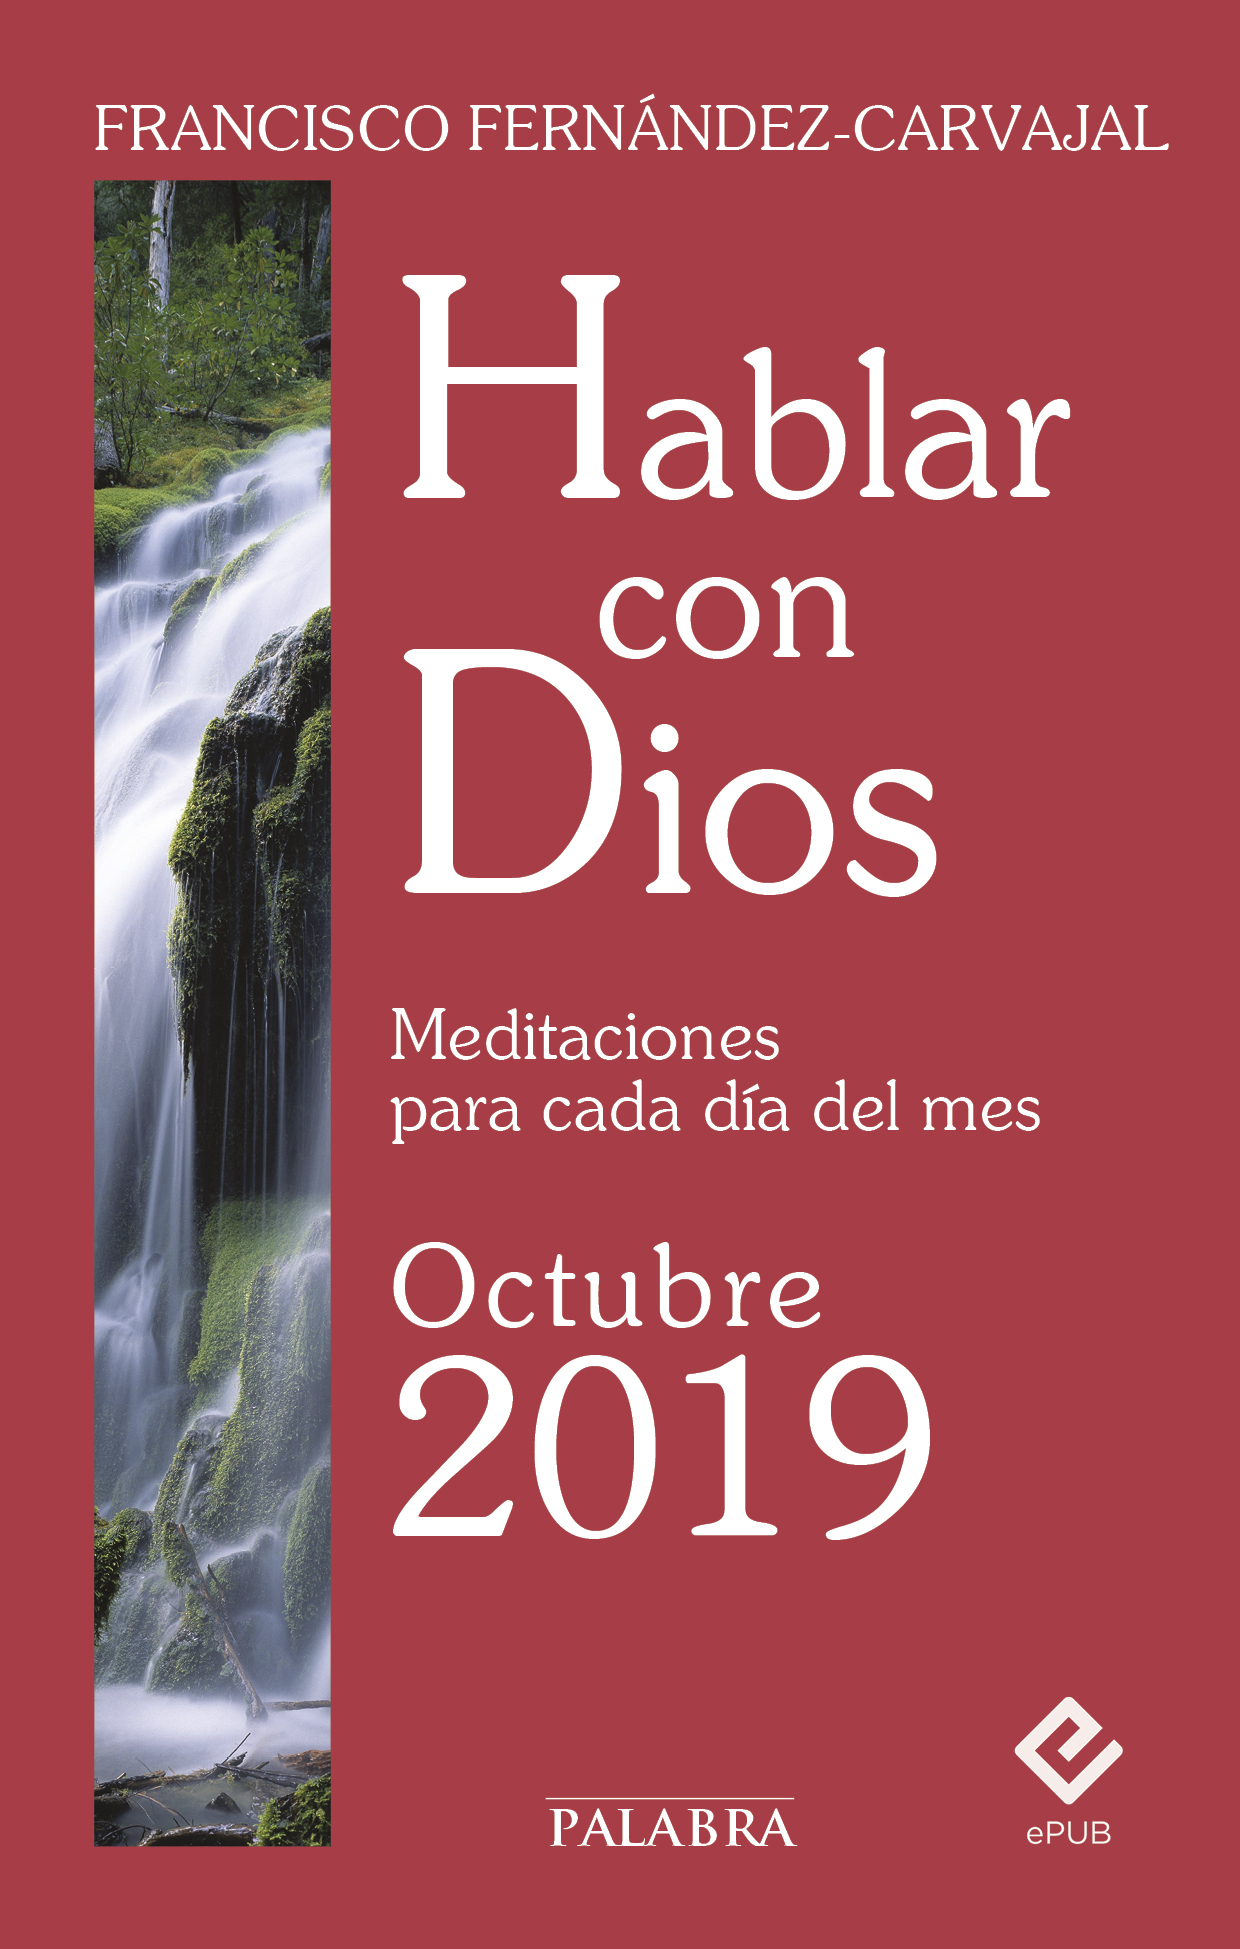 2395 - Hablar con Dios meditaciones para cada día del año (7) (Francisco Fernández Carvajal) - (Audiolibro Voz Humana)